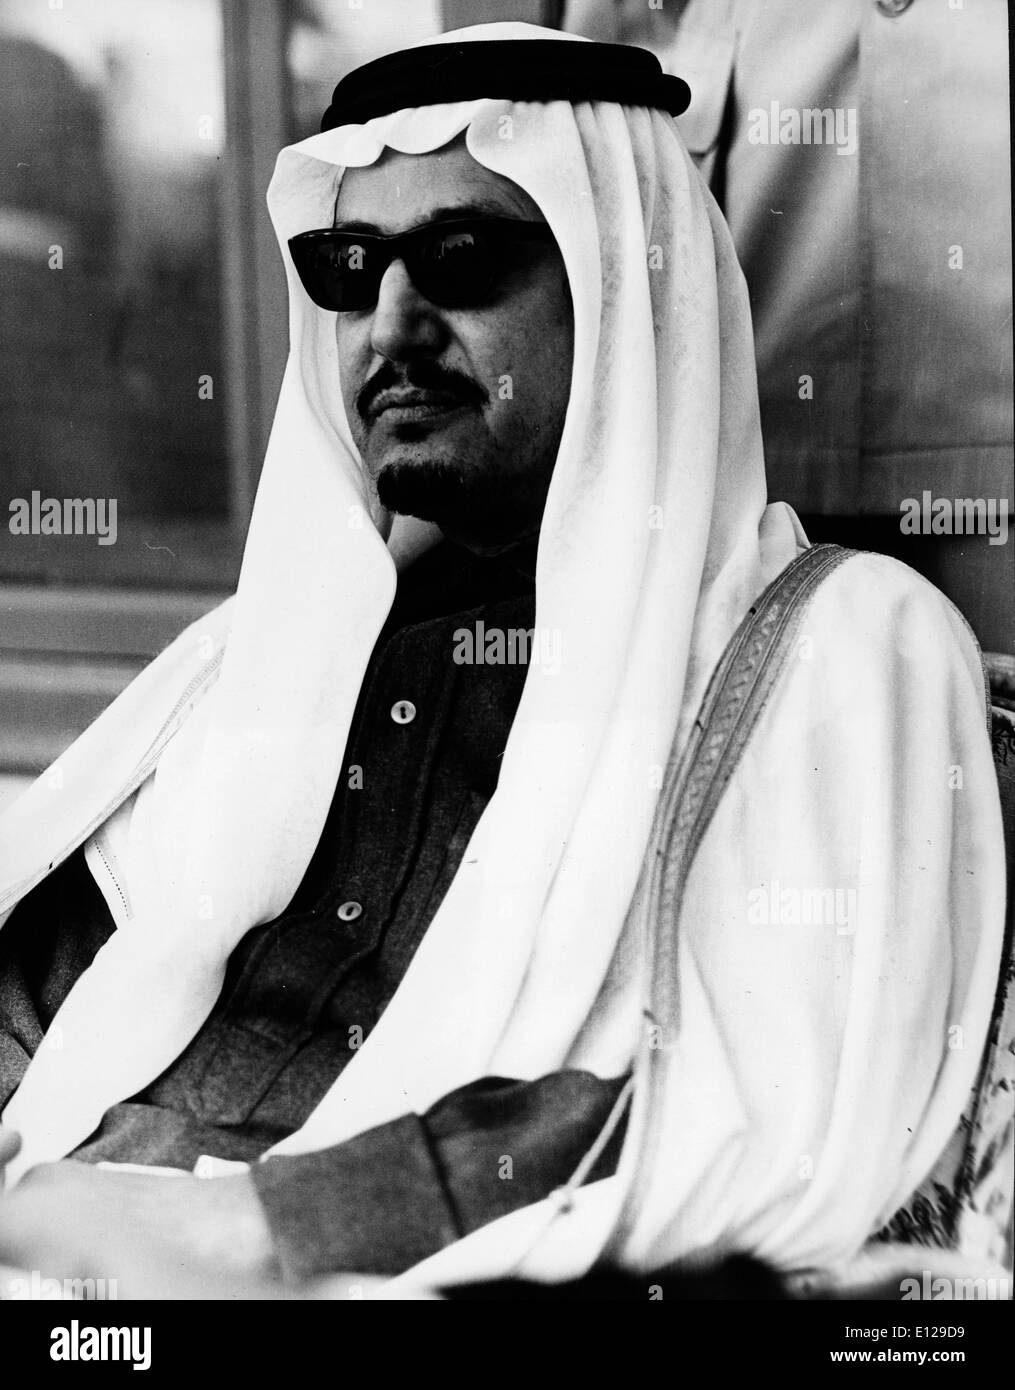 Apr 16, 2009 - La ville de Koweït, Koweït - le Roi Fahd bin Abdul Aziz Al Saud. Maison des Saoud est la famille royale du Royaume d'Arabie Saoudite. La nation moderne d'Arabie saoudite a été créé en 1932, si les racines et l'influence pour la Maison des Saoud a été plantée dans la péninsule arabe plusieurs siècles plus tôt. Avant l'ère du fondateur du royaume, Abdul-Aziz ibn Saud, la famille a jugé le Nejd et avait à plusieurs reprises en conflit avec l'Empire Ottoman, le Chérif de La Mecque, et la famille Al Rashid de Ha'il Banque D'Images